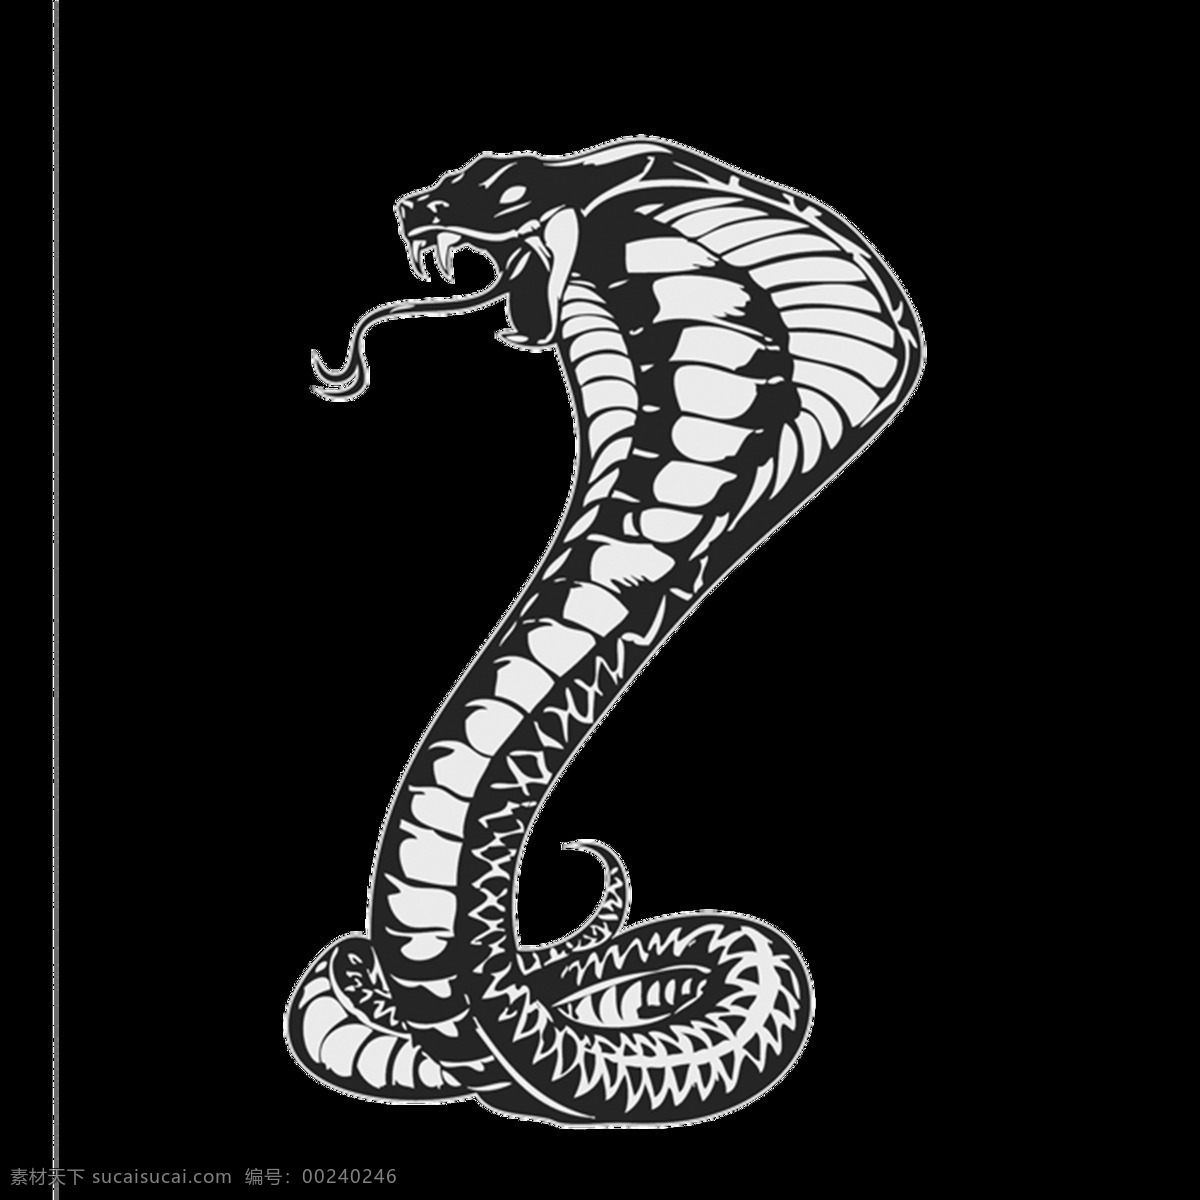 蛇 logo 水蛇 蟒蛇 眼镜蛇 赤链蛇 银环蛇 金环蛇 黑蛇 青蛇 海蛇 png图 透明图 免扣图 透明背景 透明底 抠图